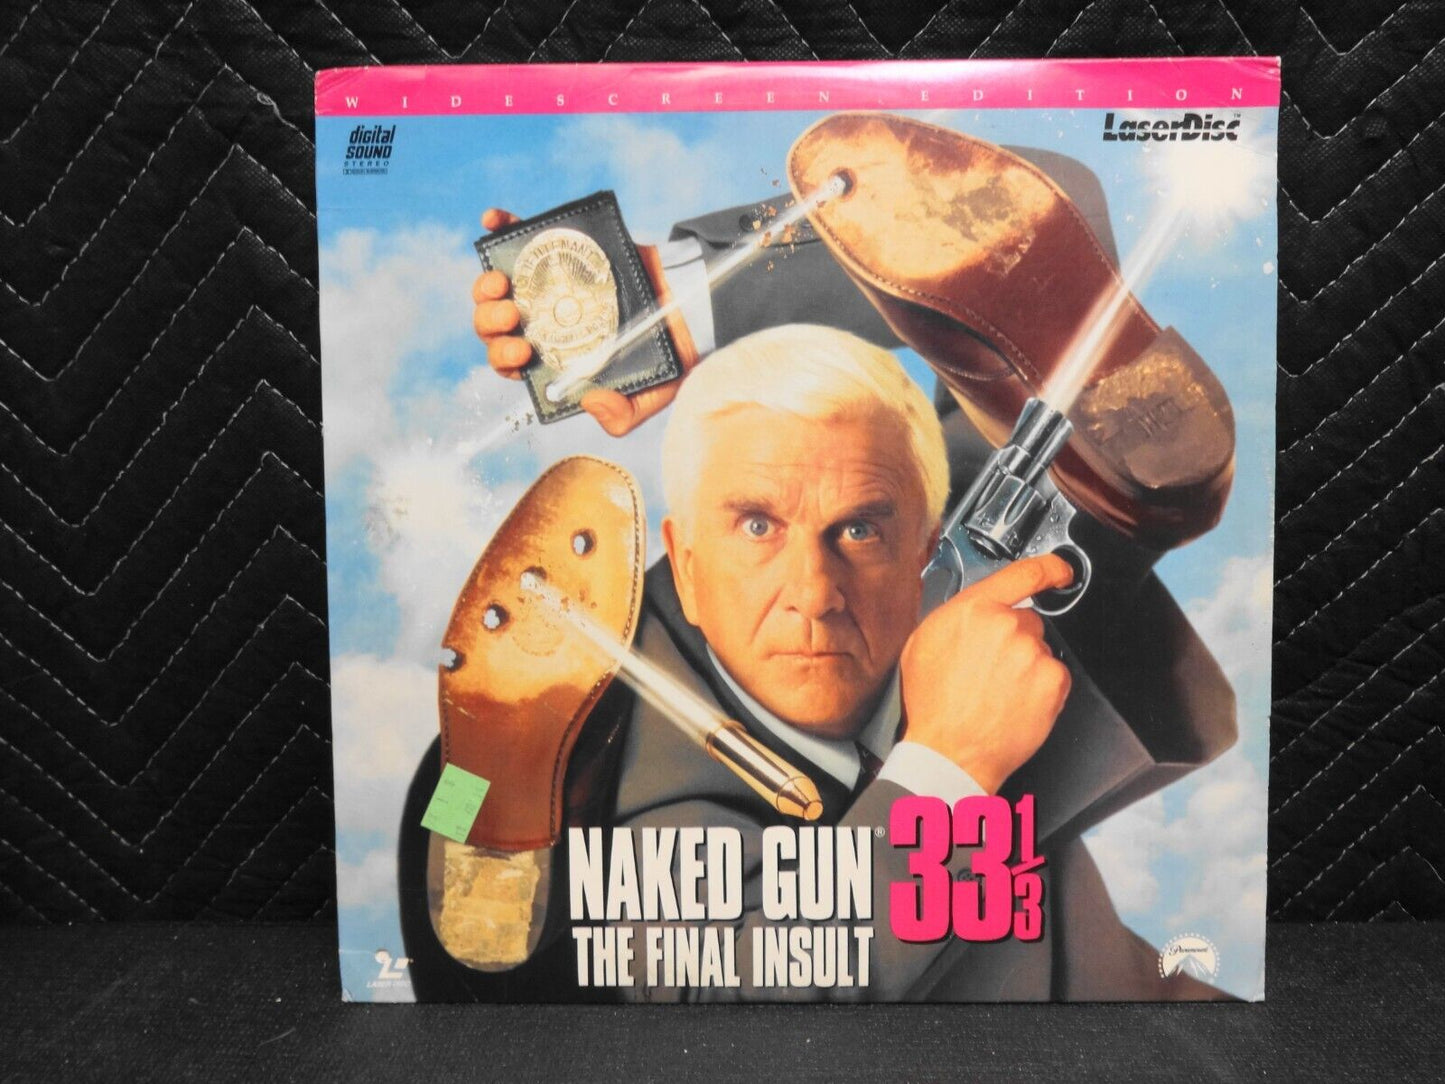 The Naked Gun 33 1/3: The Final Insult (Laserdisc, 1994)